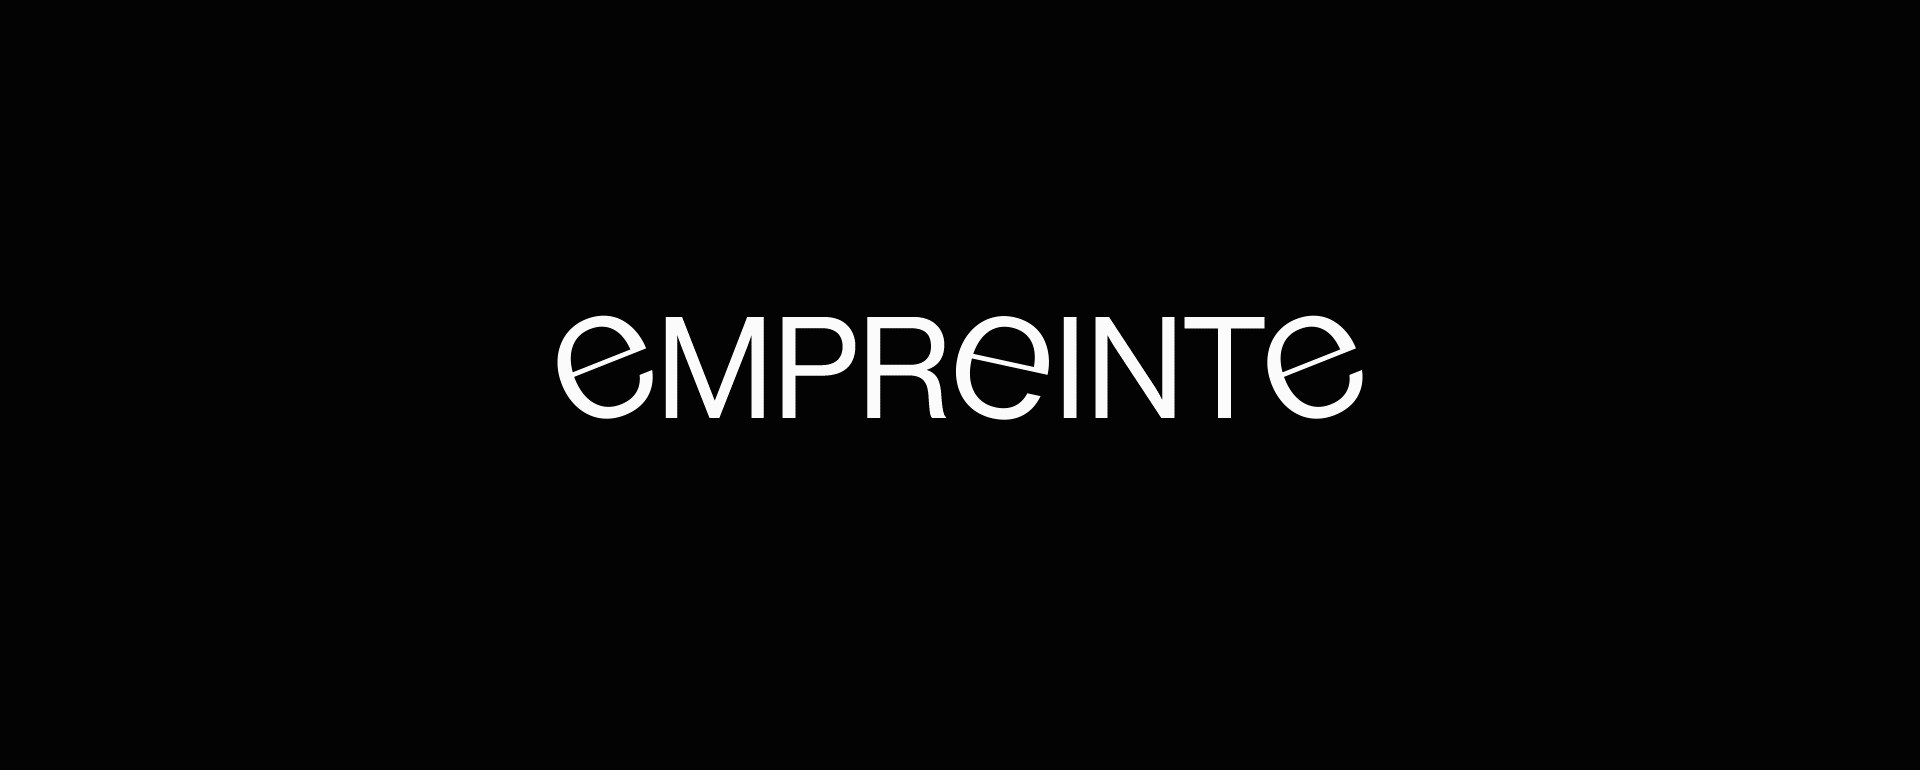 Empreinte_Logo